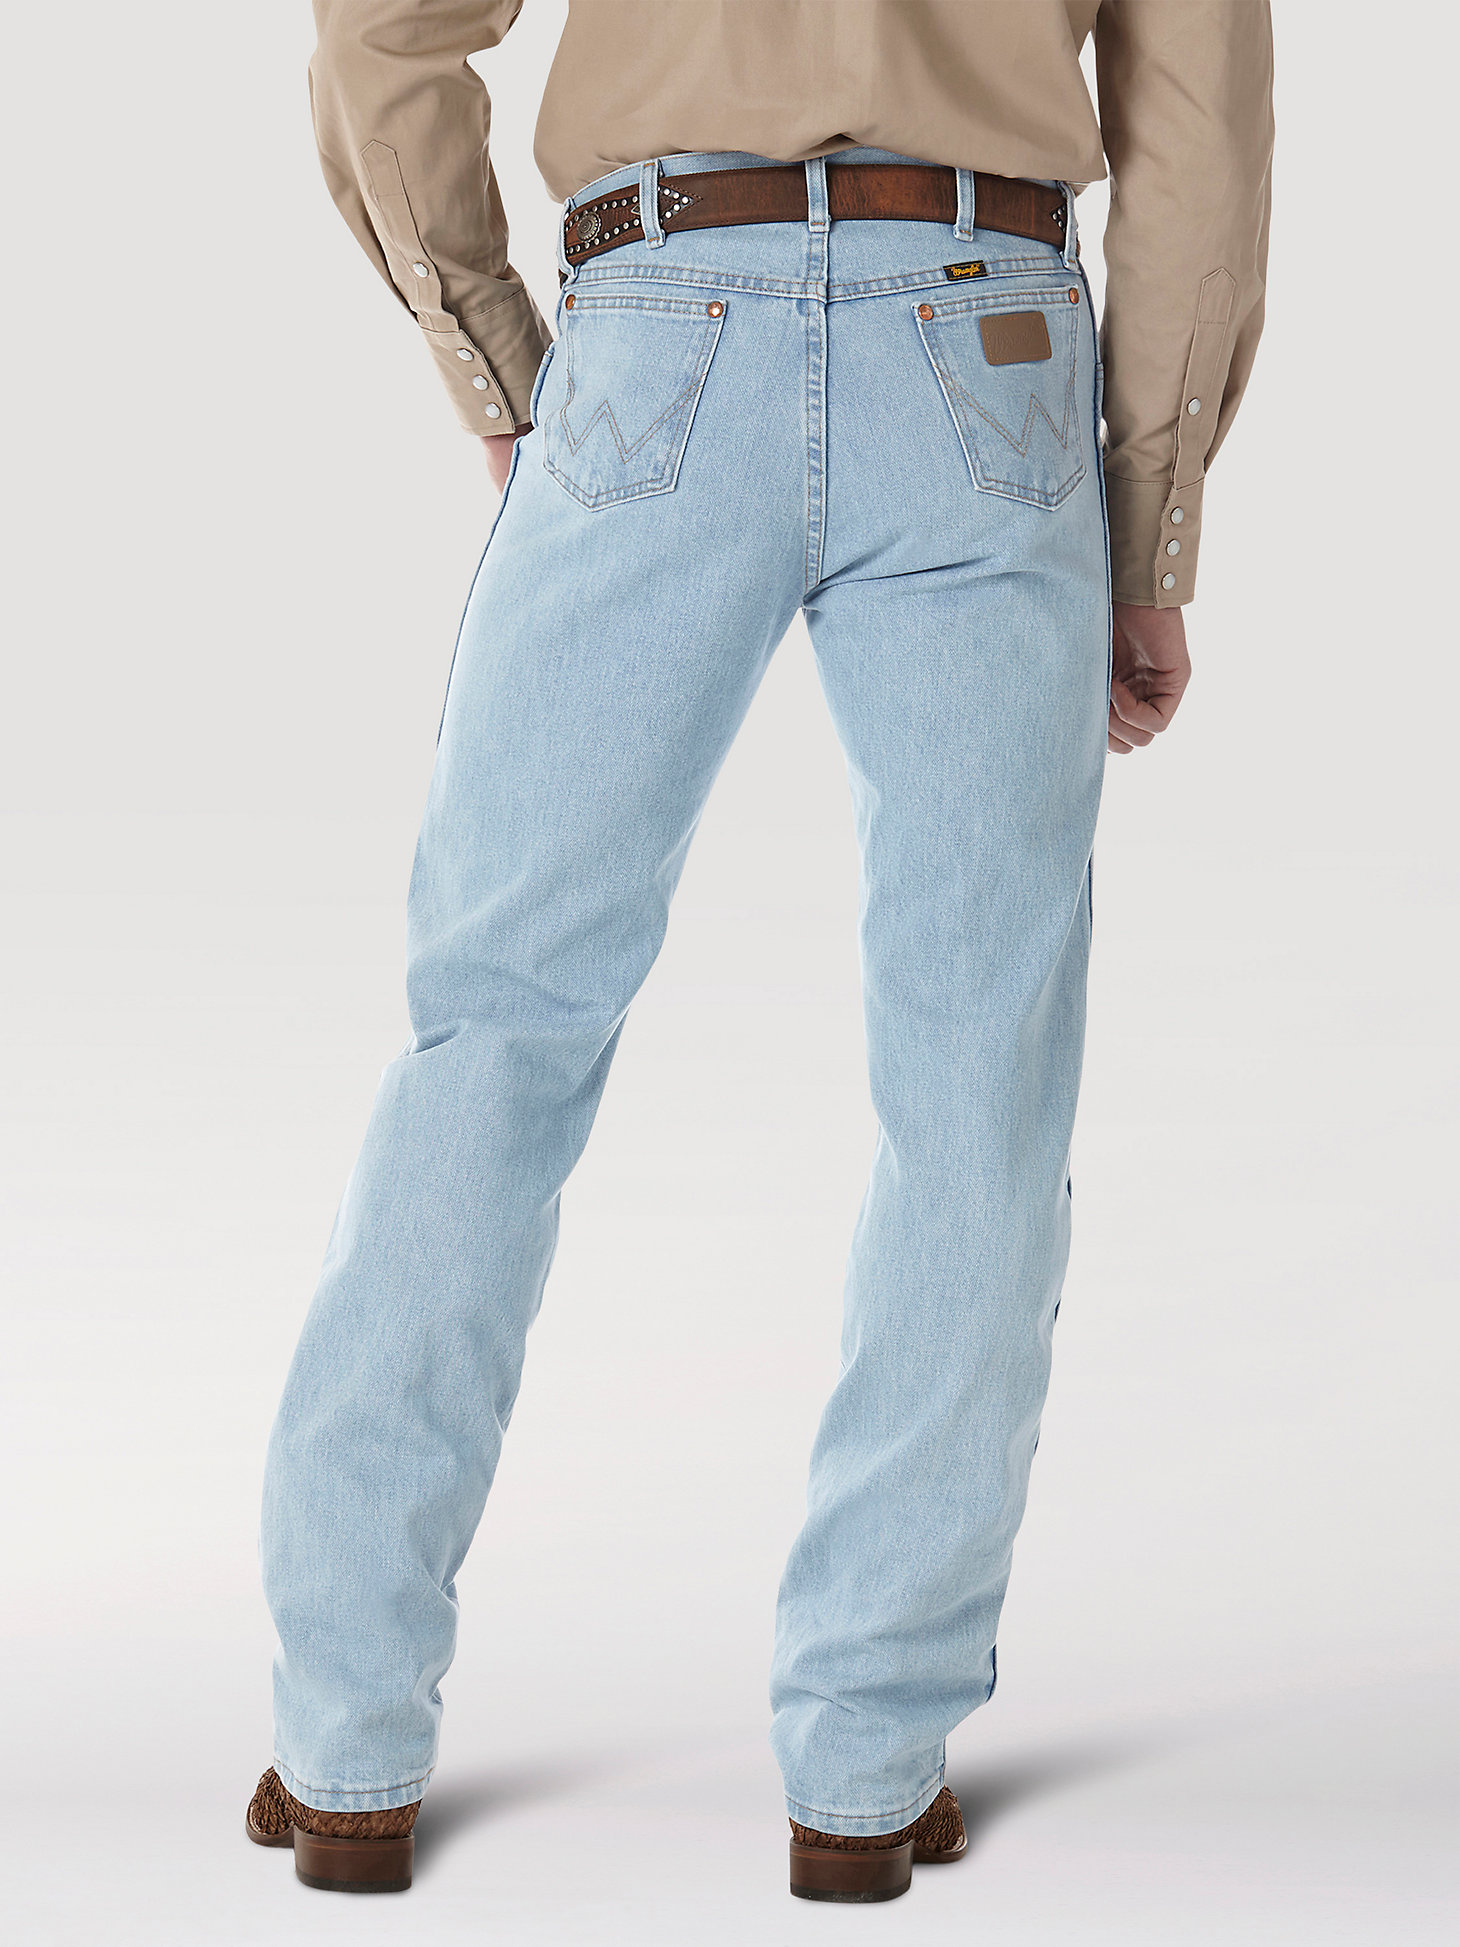 Wrangler® Cowboy Cut® Original Fit Jean in Bleach alternative view 1